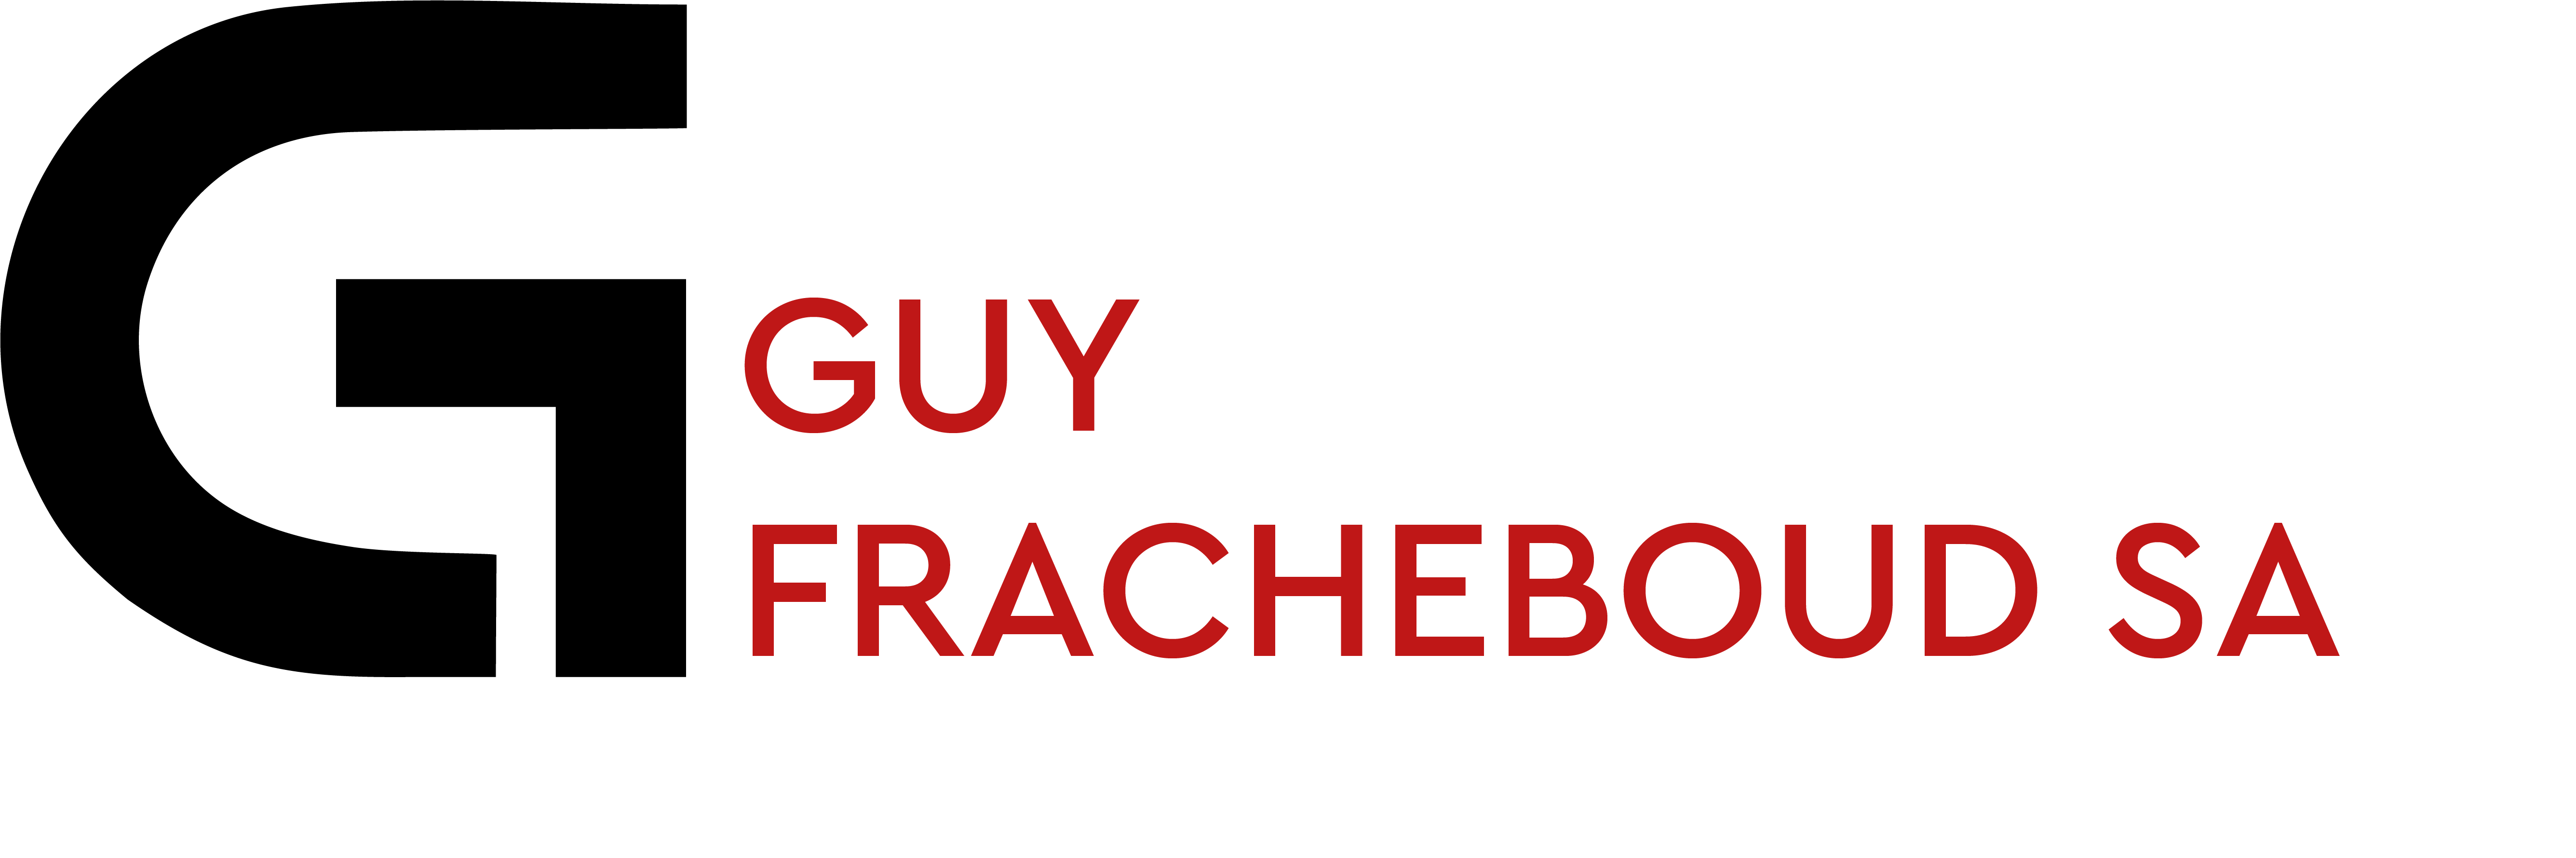 Guy Fracheboud